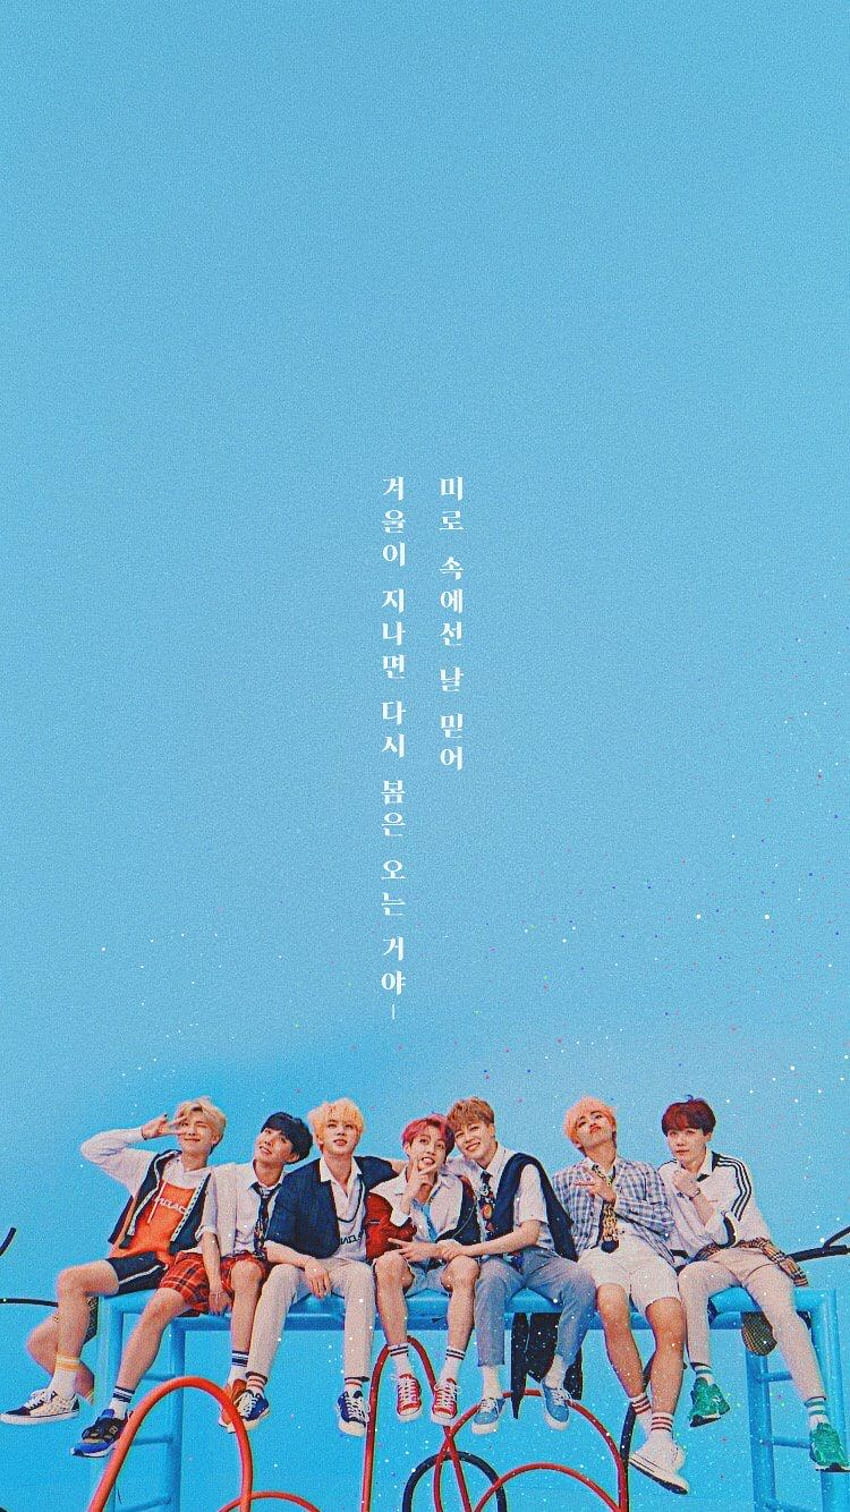 BTS 'IDOL' JIMIN phone wallpaper by AreumdawoKpop on DeviantArt